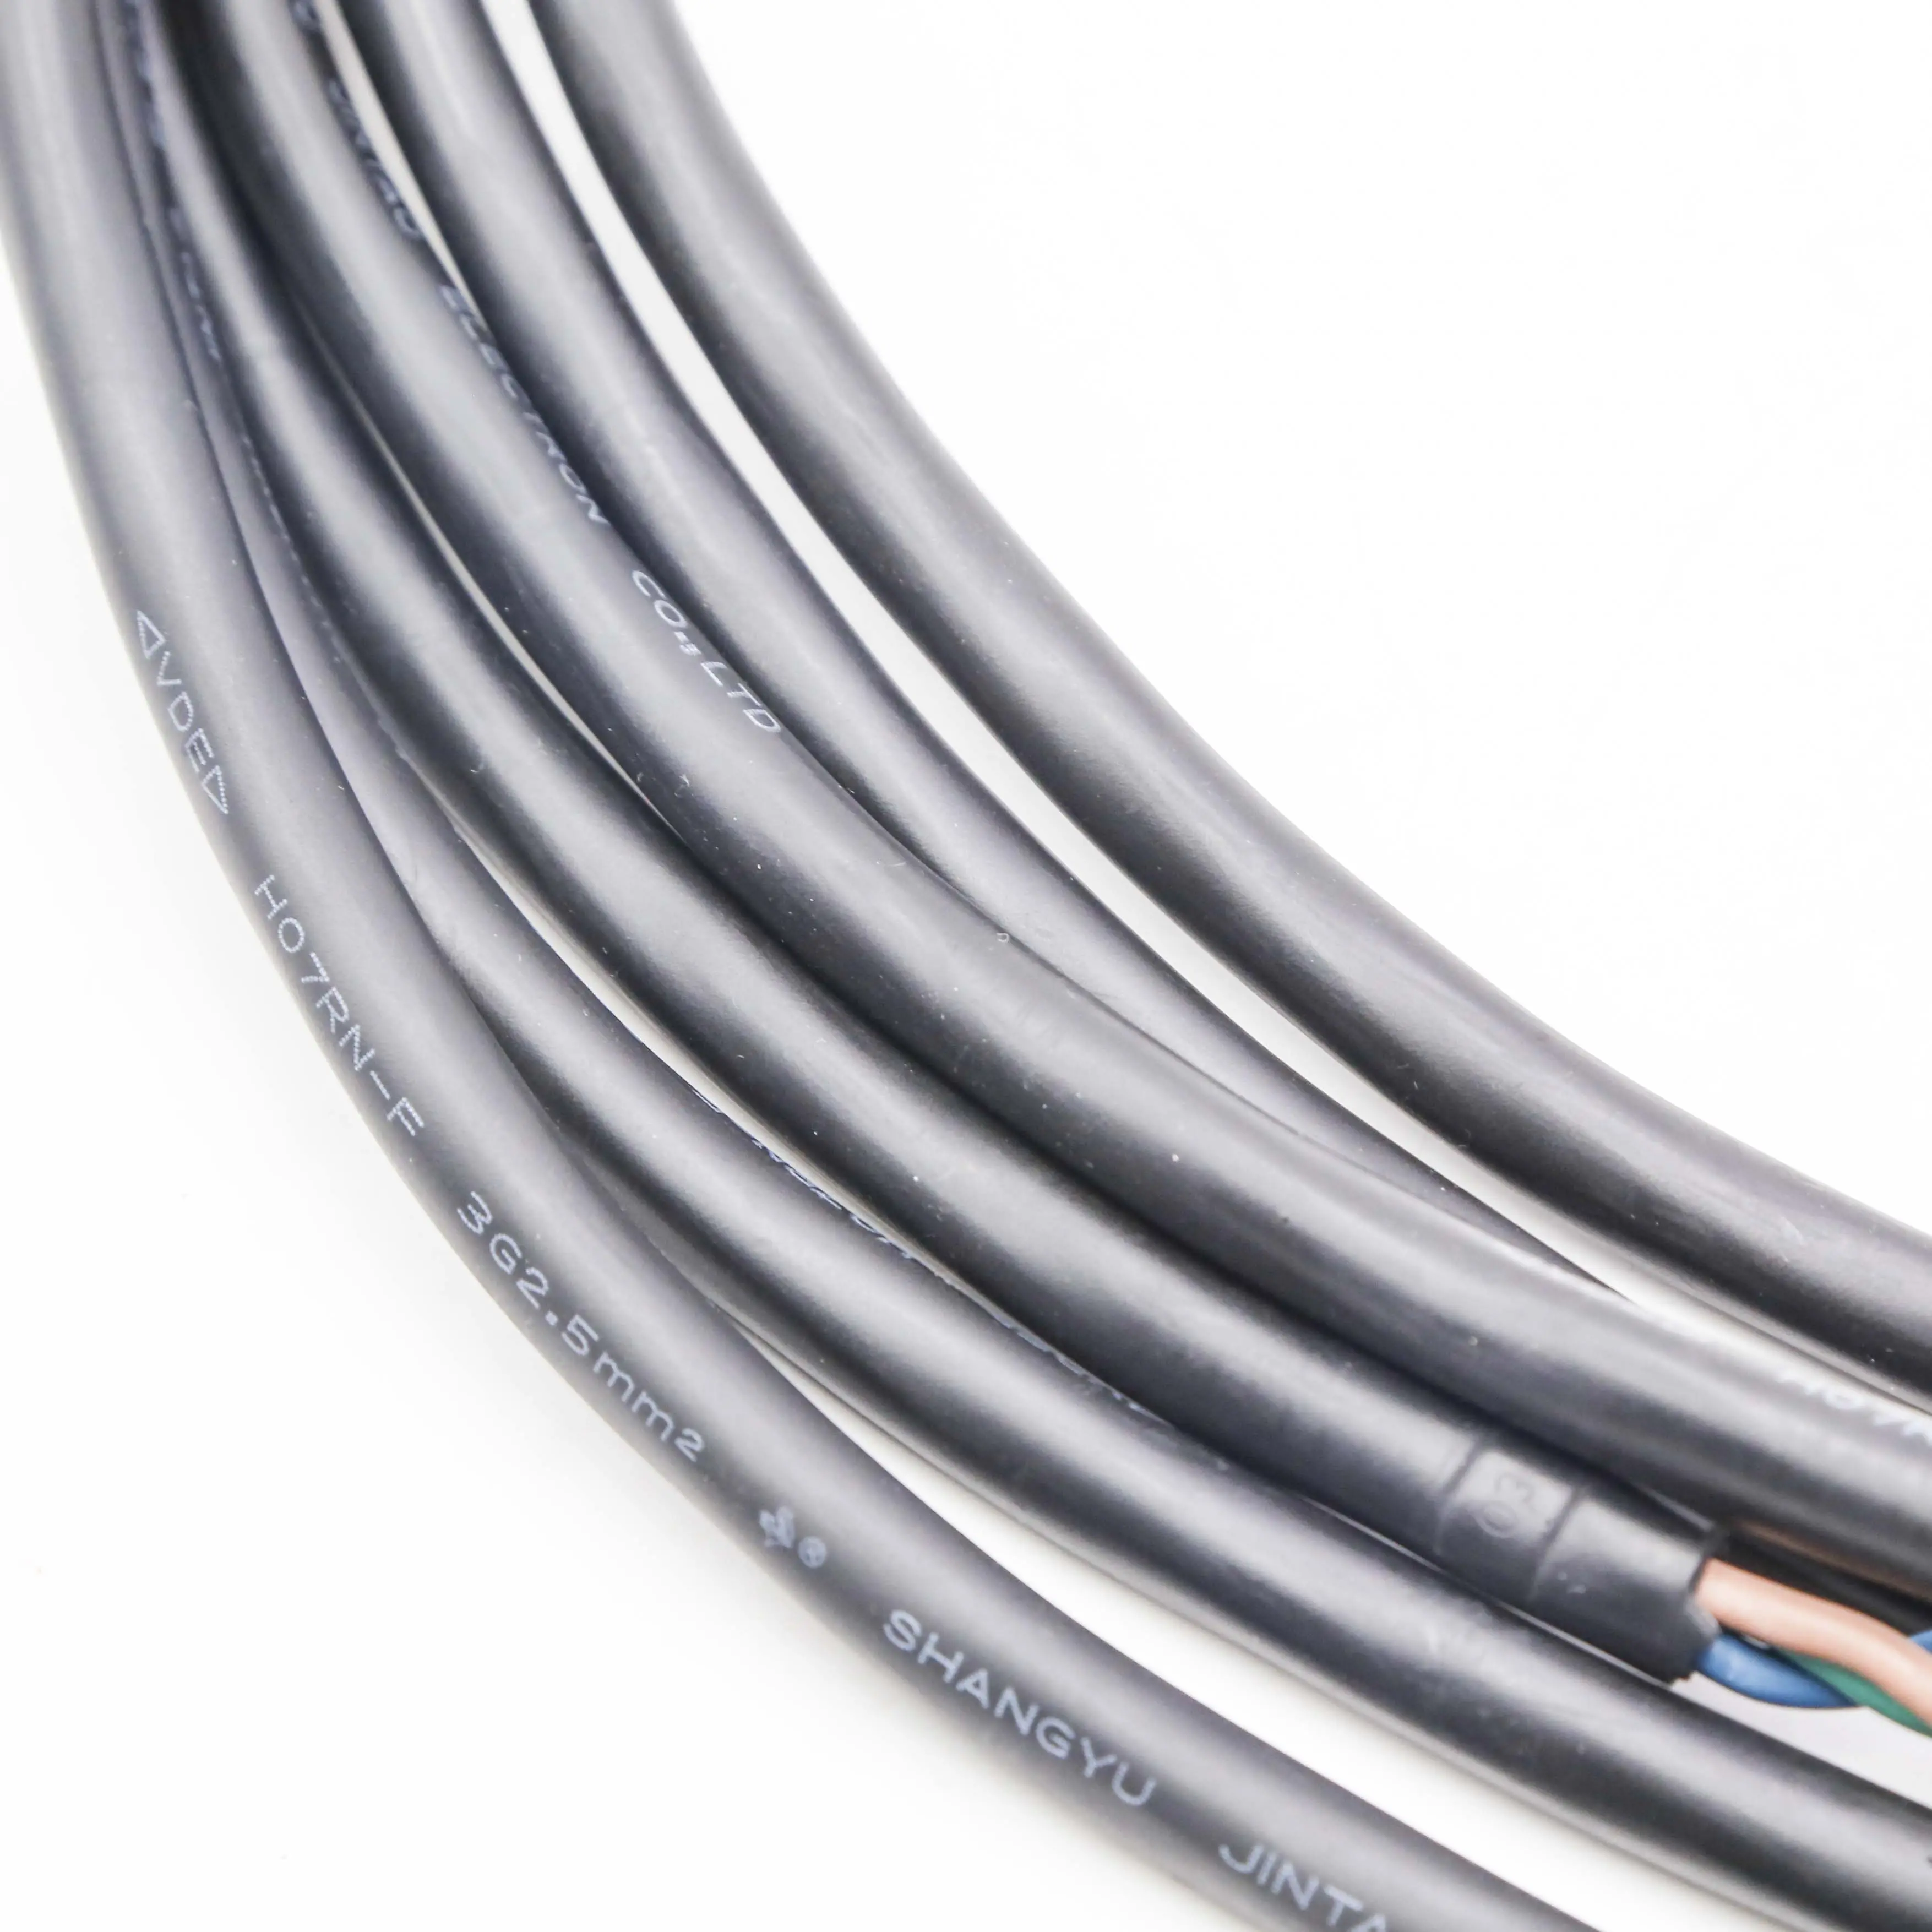 450/750v ab avustralya kore standart kauçuk kılıflı esnek kablo